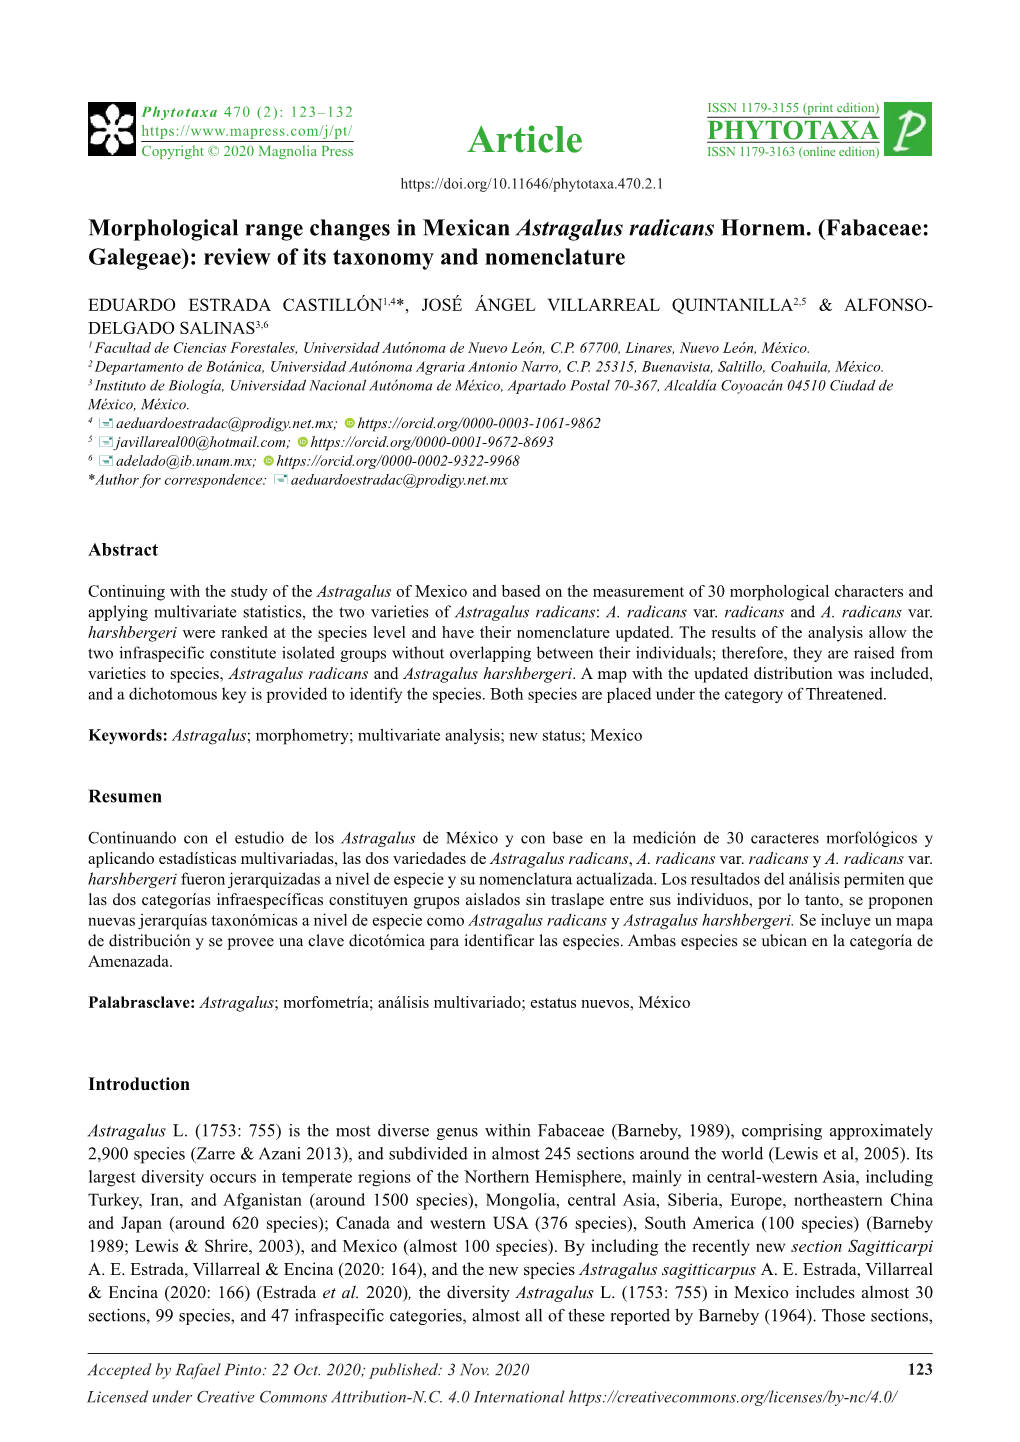 Morphological Range Changes in Mexican Astragalus Radicans Hornem